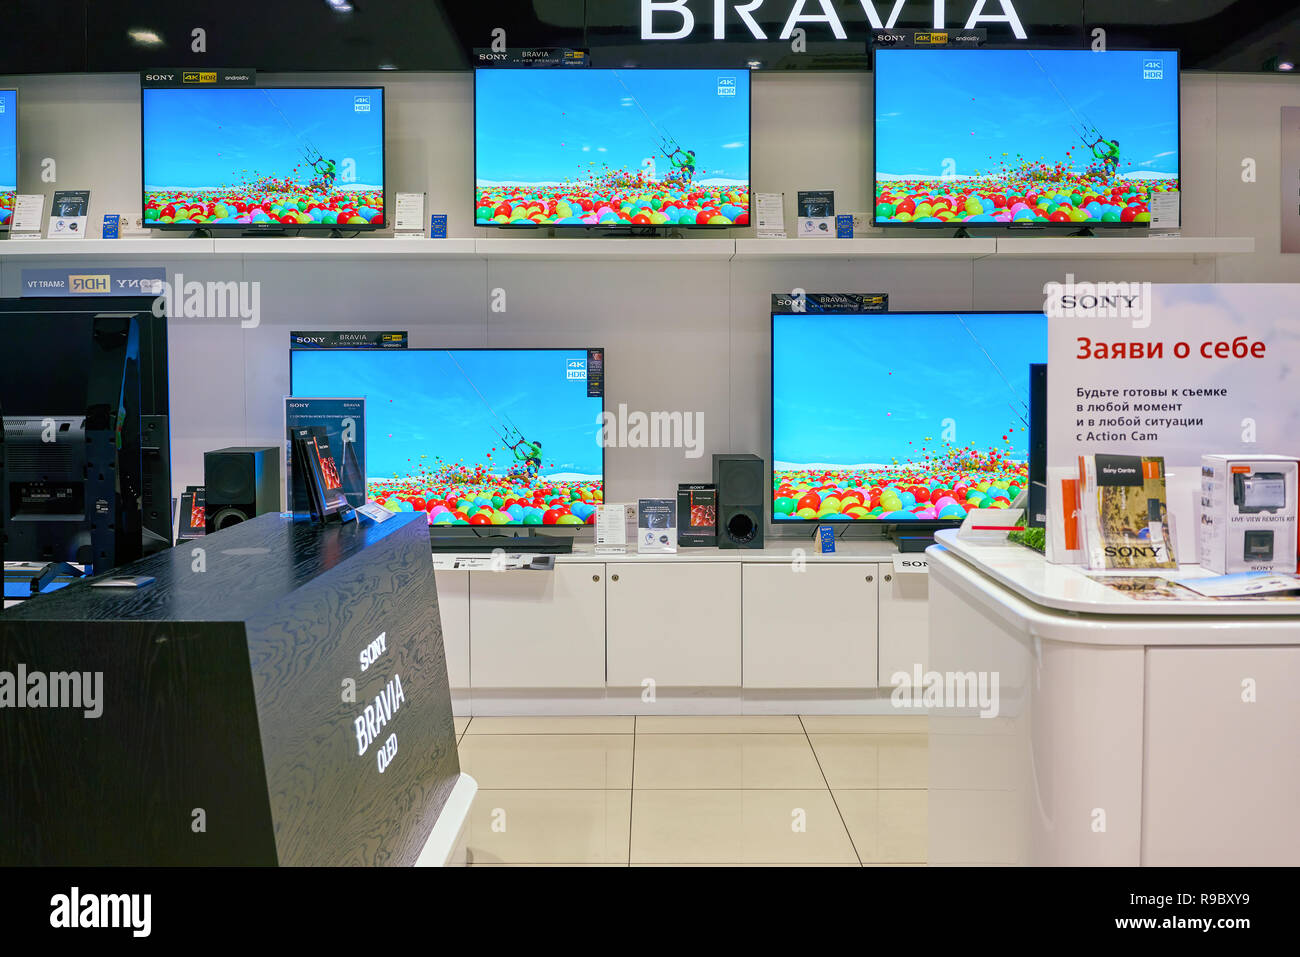 SAINT PETERSBURG, Russia - circa maggio, 2018: merci sul display di Sony store nella Galeria Shopping center. Foto Stock